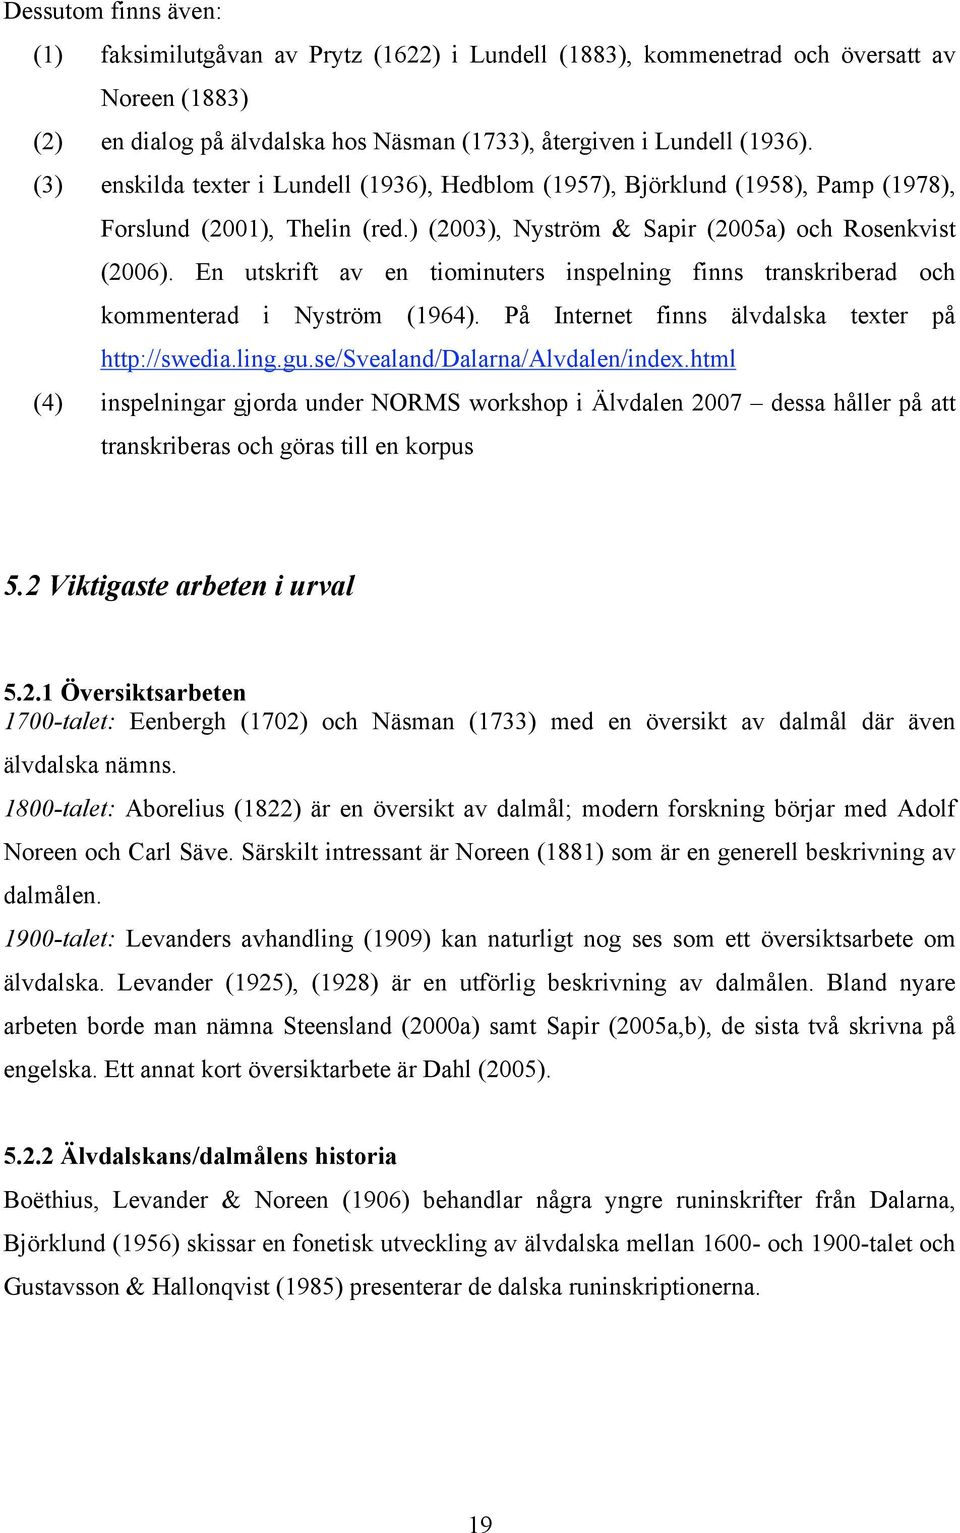 En utskrift av en tiominuters inspelning finns transkriberad och kommenterad i Nyström (1964). På Internet finns älvdalska texter på http://swedia.ling.gu.se/svealand/dalarna/alvdalen/index.